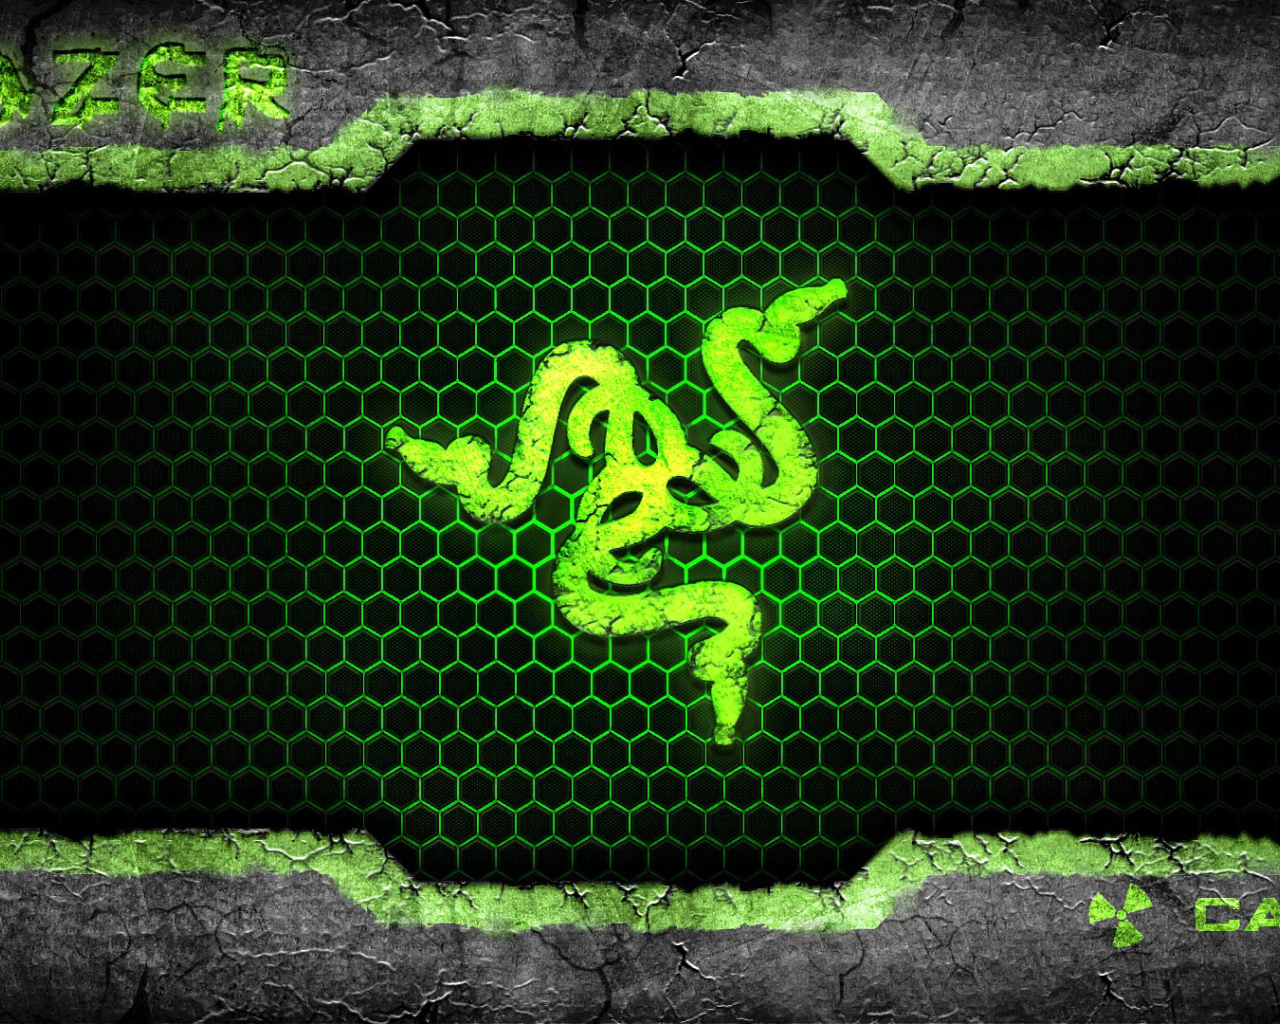 Icon of the snakes of Razer